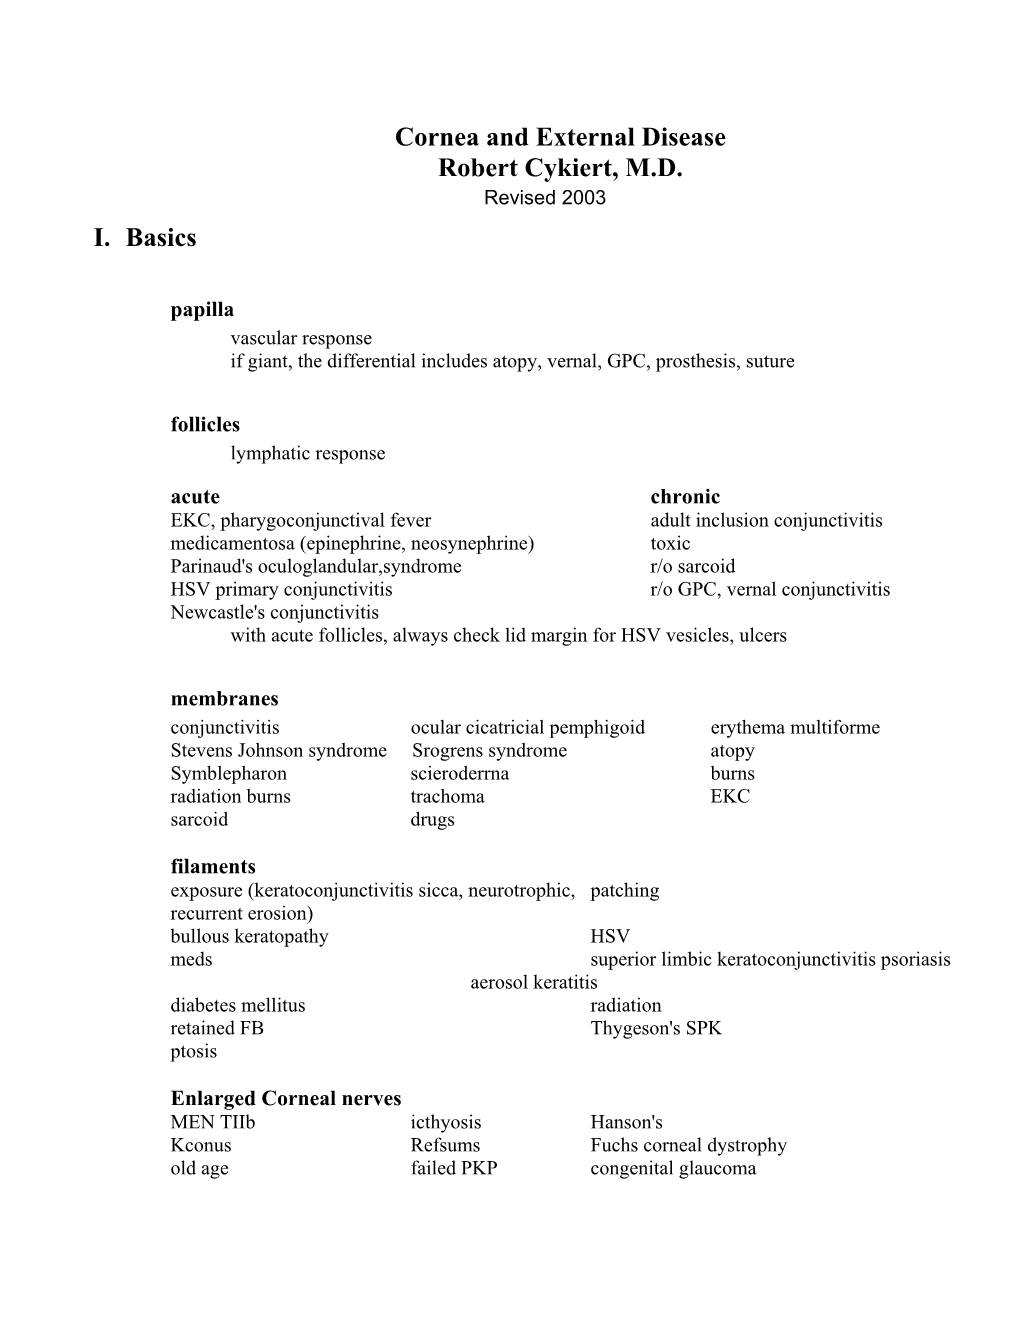 Cornea and External Disease Robert Cykiert, M.D